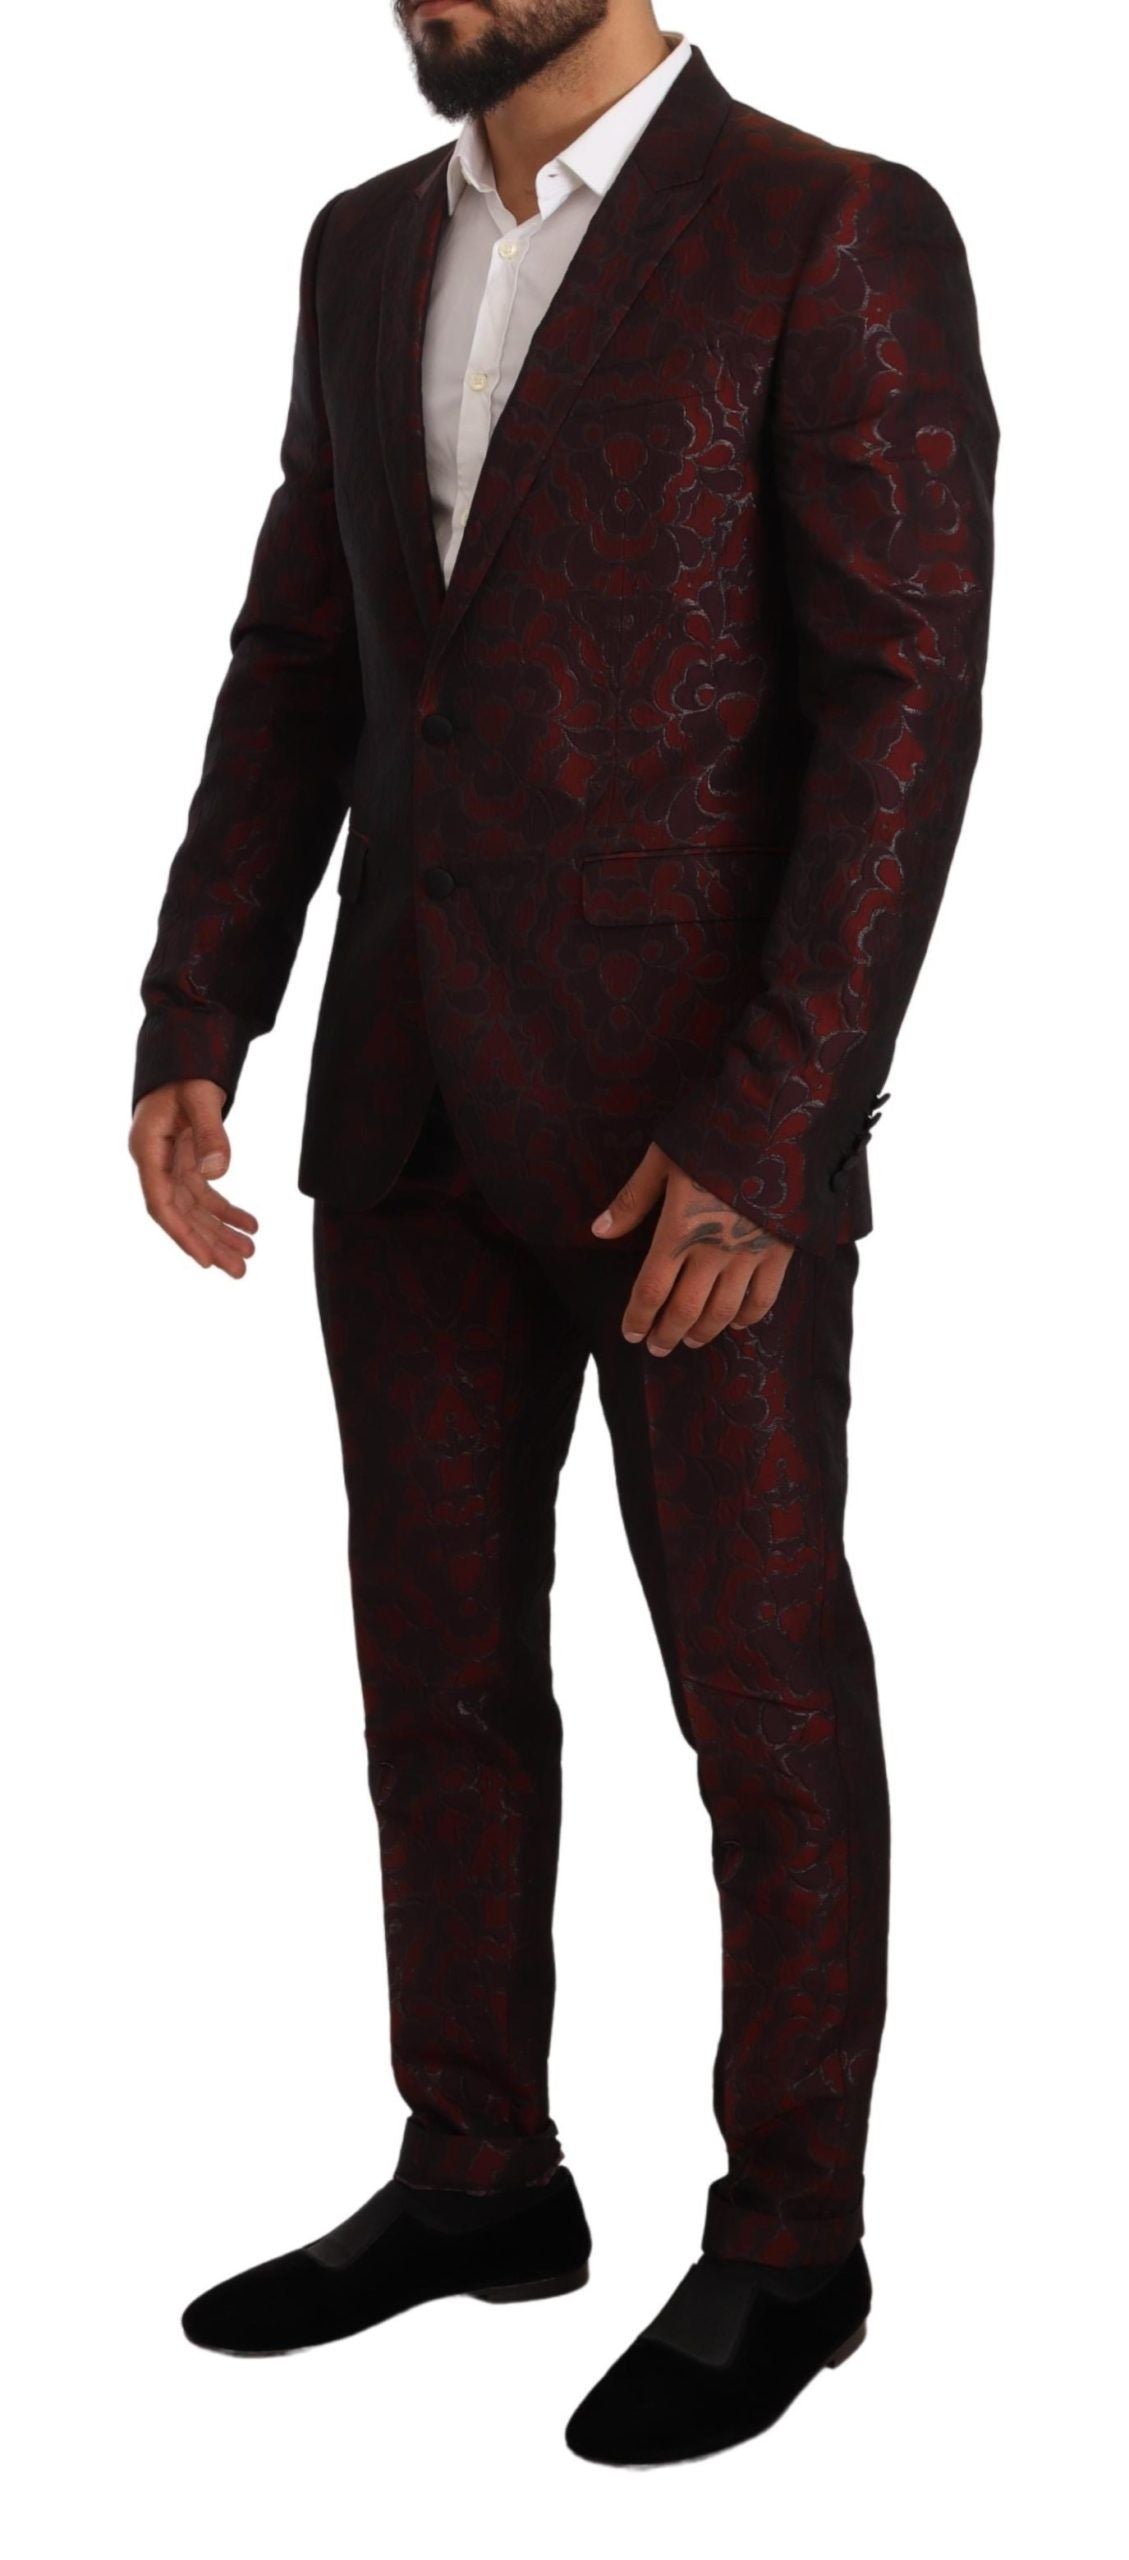 Elegant Red Martini Three Piece Suit